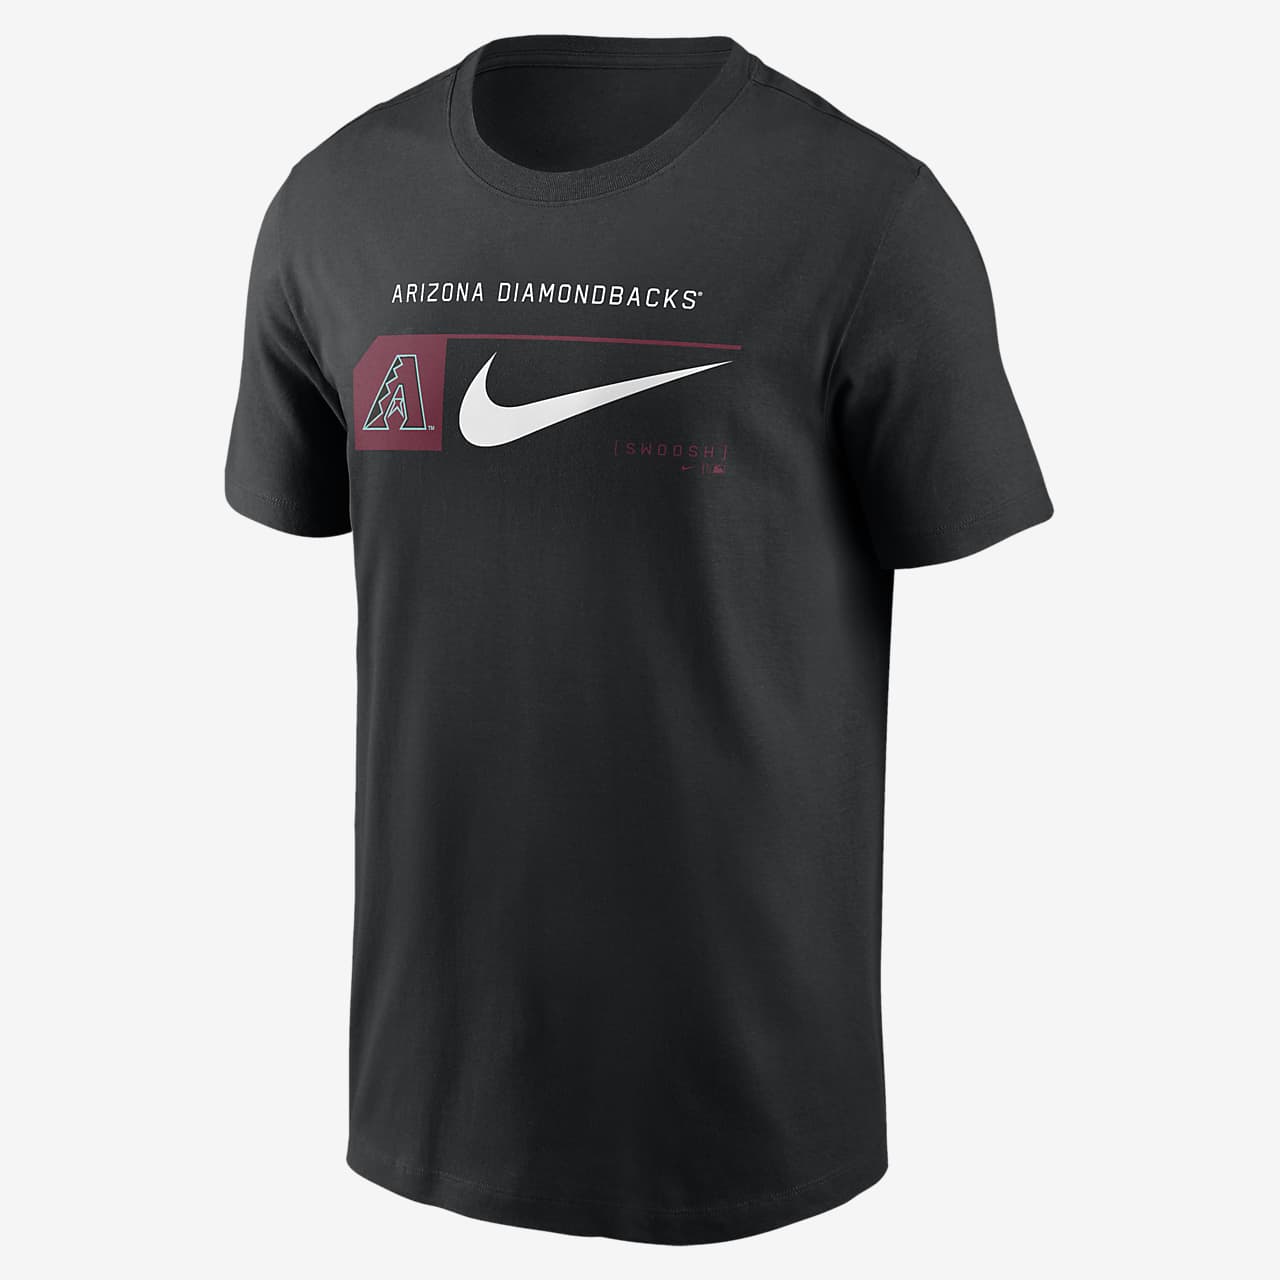 Arizona Diamondbacks Team Swoosh Lockup Men's Nike MLB T-Shirt